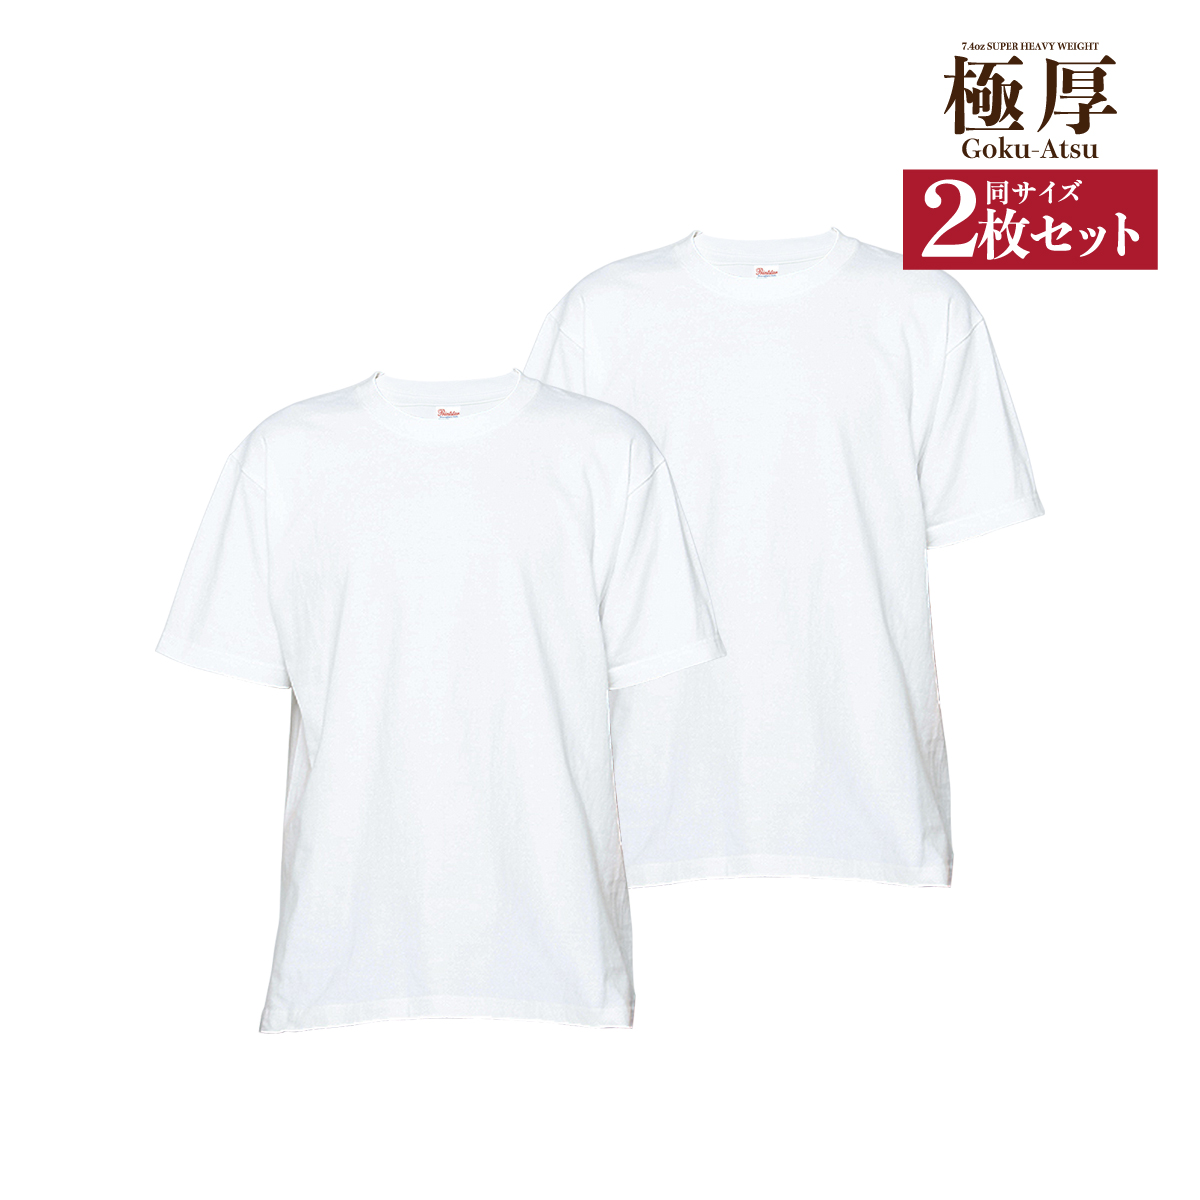 白tシャツ Tシャツ まとめ買い 白2枚セット 白 メンズ レディース 厚手